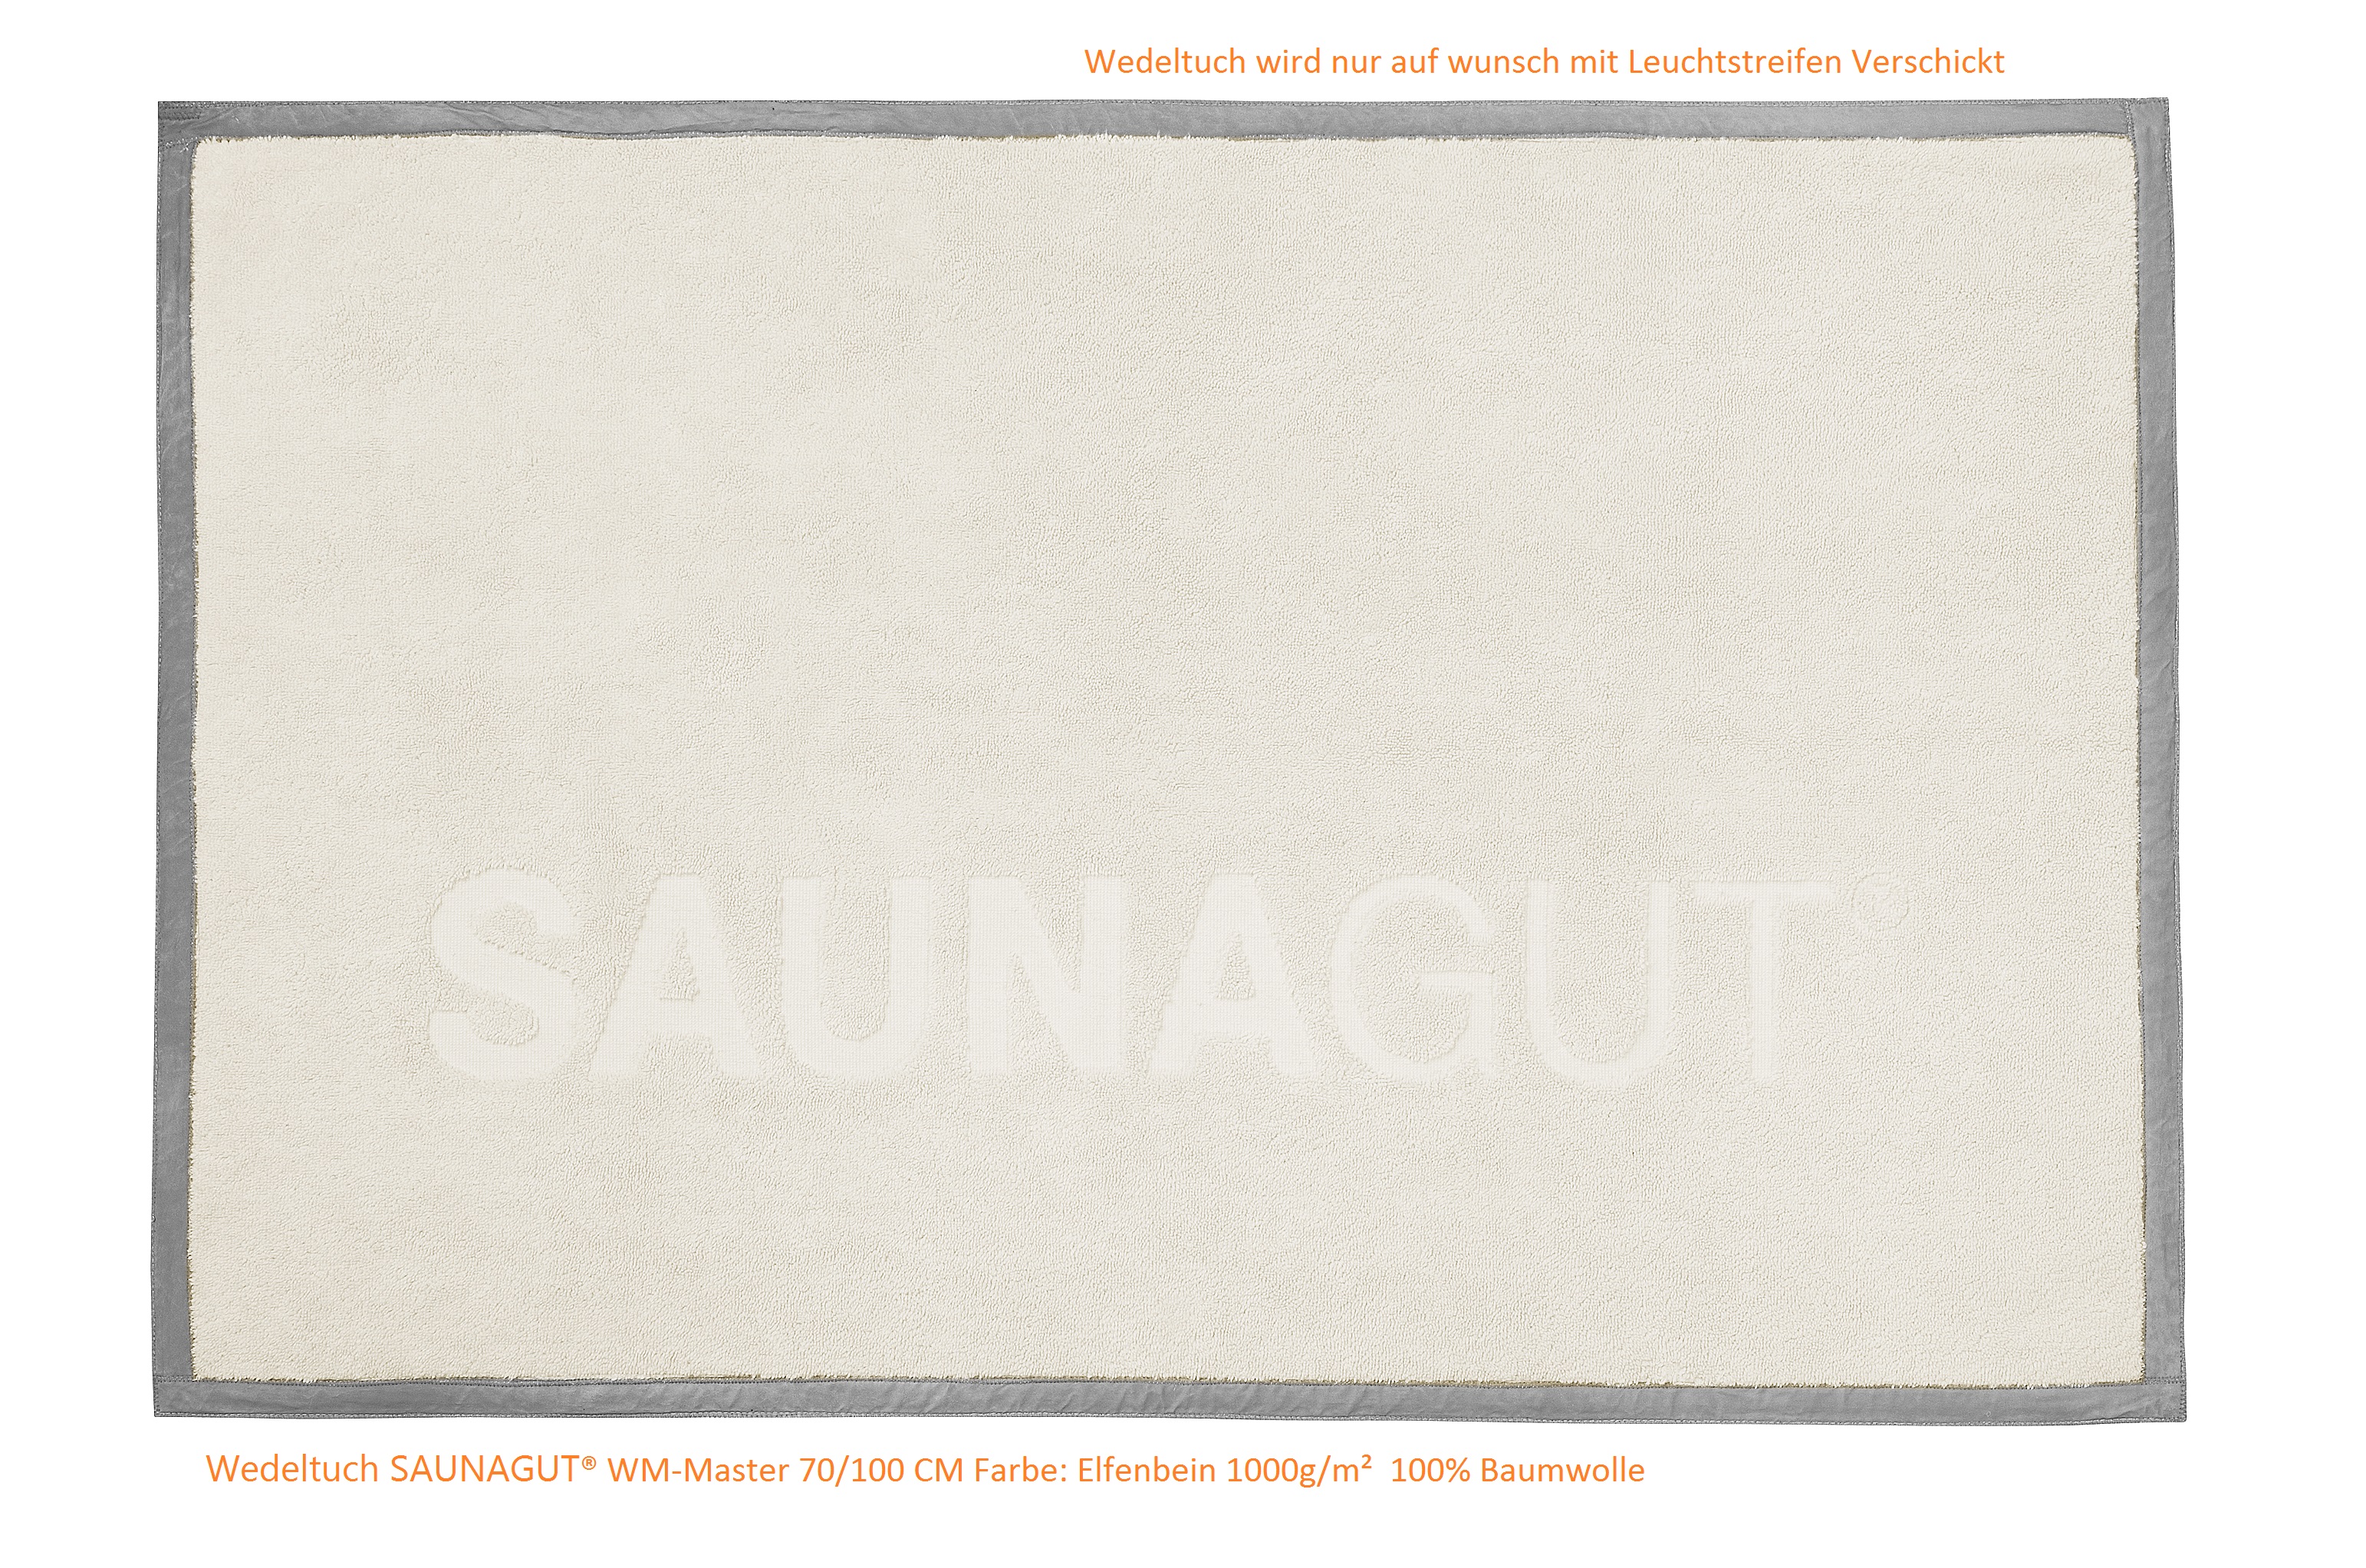 Wedeltuch SAUNAGUT® WM-Master 70/100 CM Farbe: Elfenbein 1000 g m²